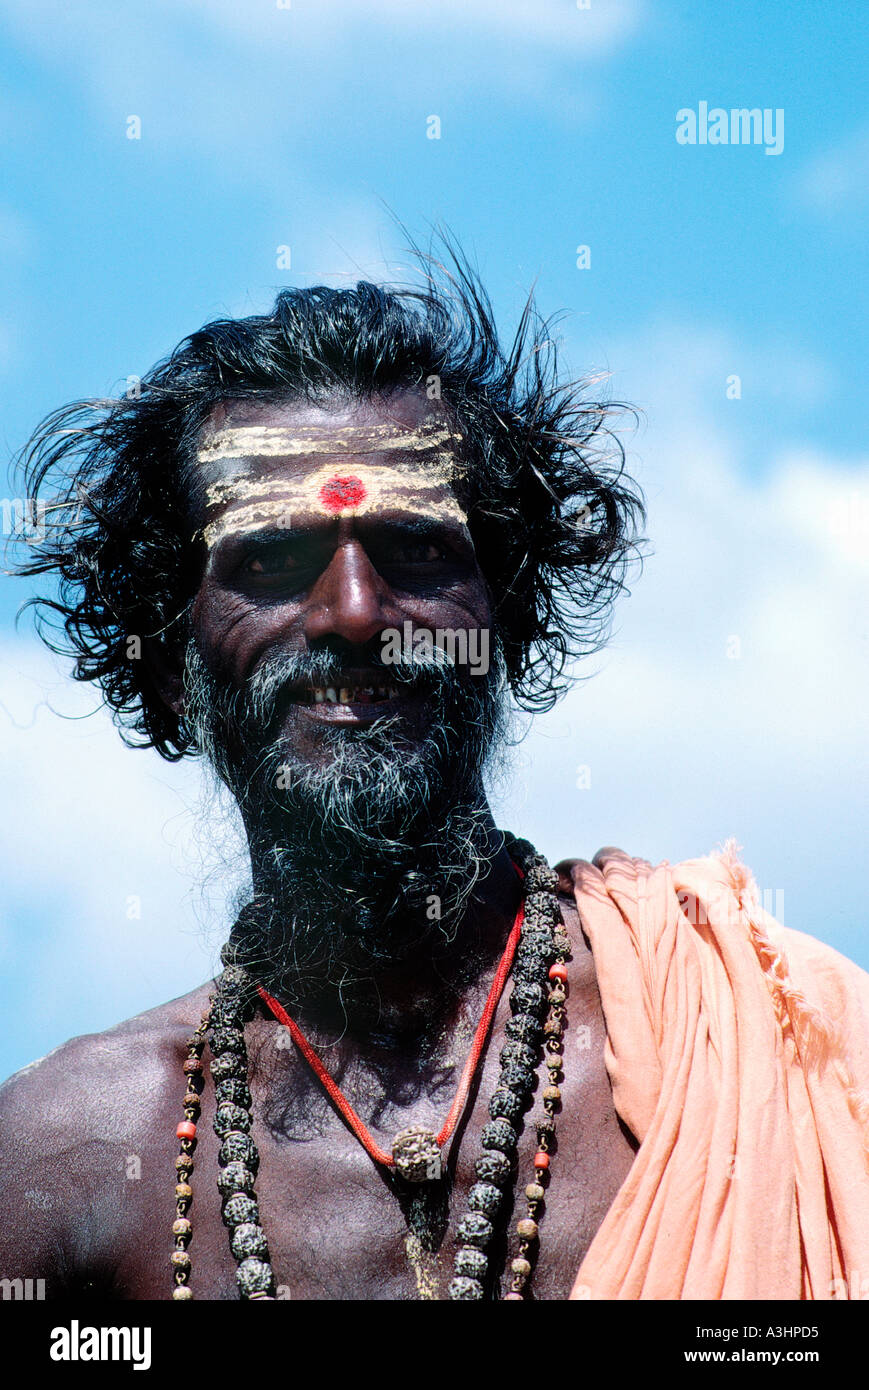 Ritratto di sadhu uomo santo stato di tamilnadu india solo uso editoriale Foto Stock